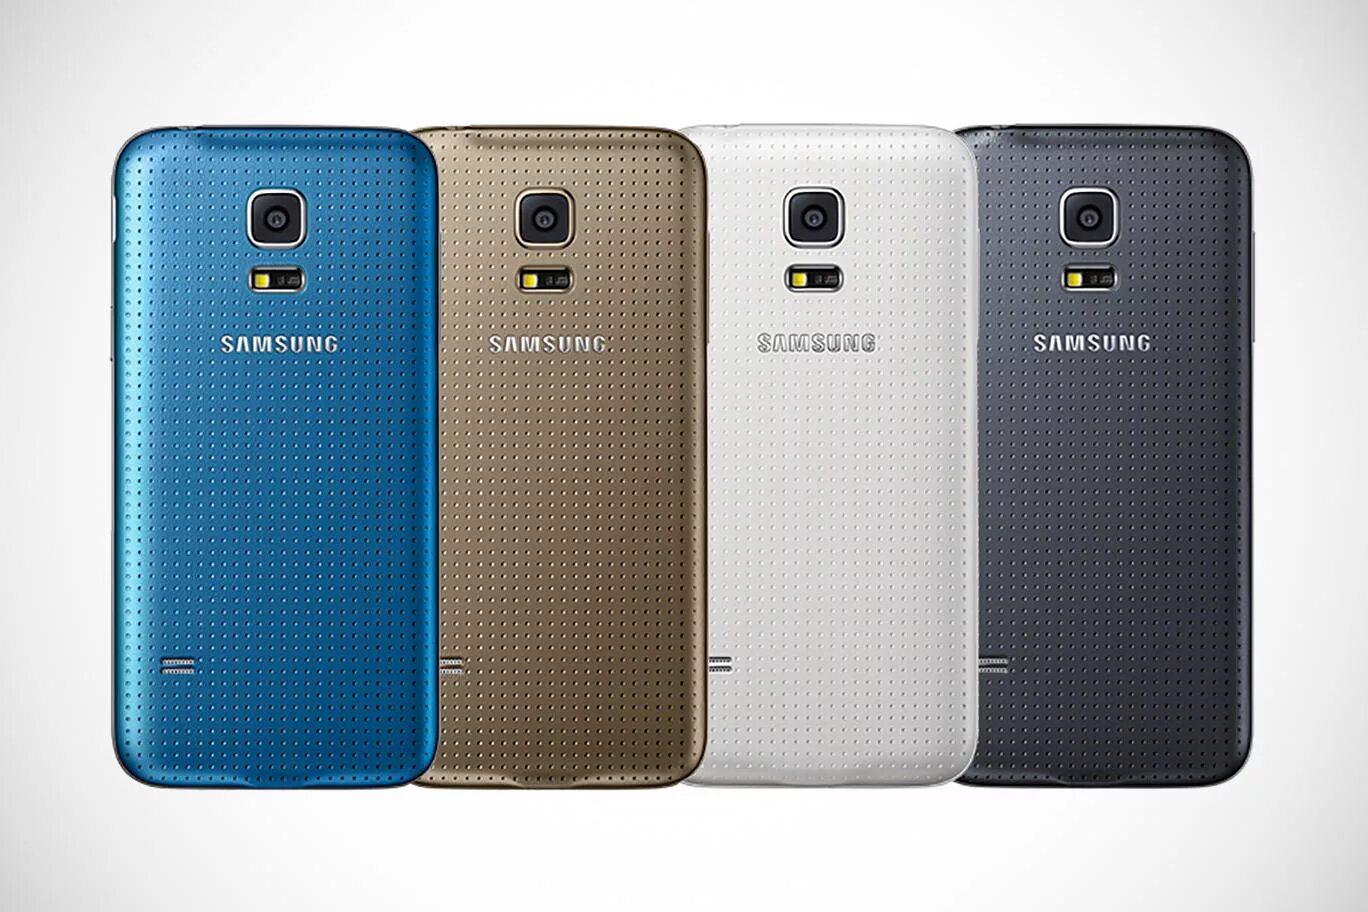 Самсунг галакси s5 Mini. Samsung Galaxy s5. Samsung Galaxy s5 Mini Duos. Samsung s5 Mini Duos. Samsung galaxy s5 sm